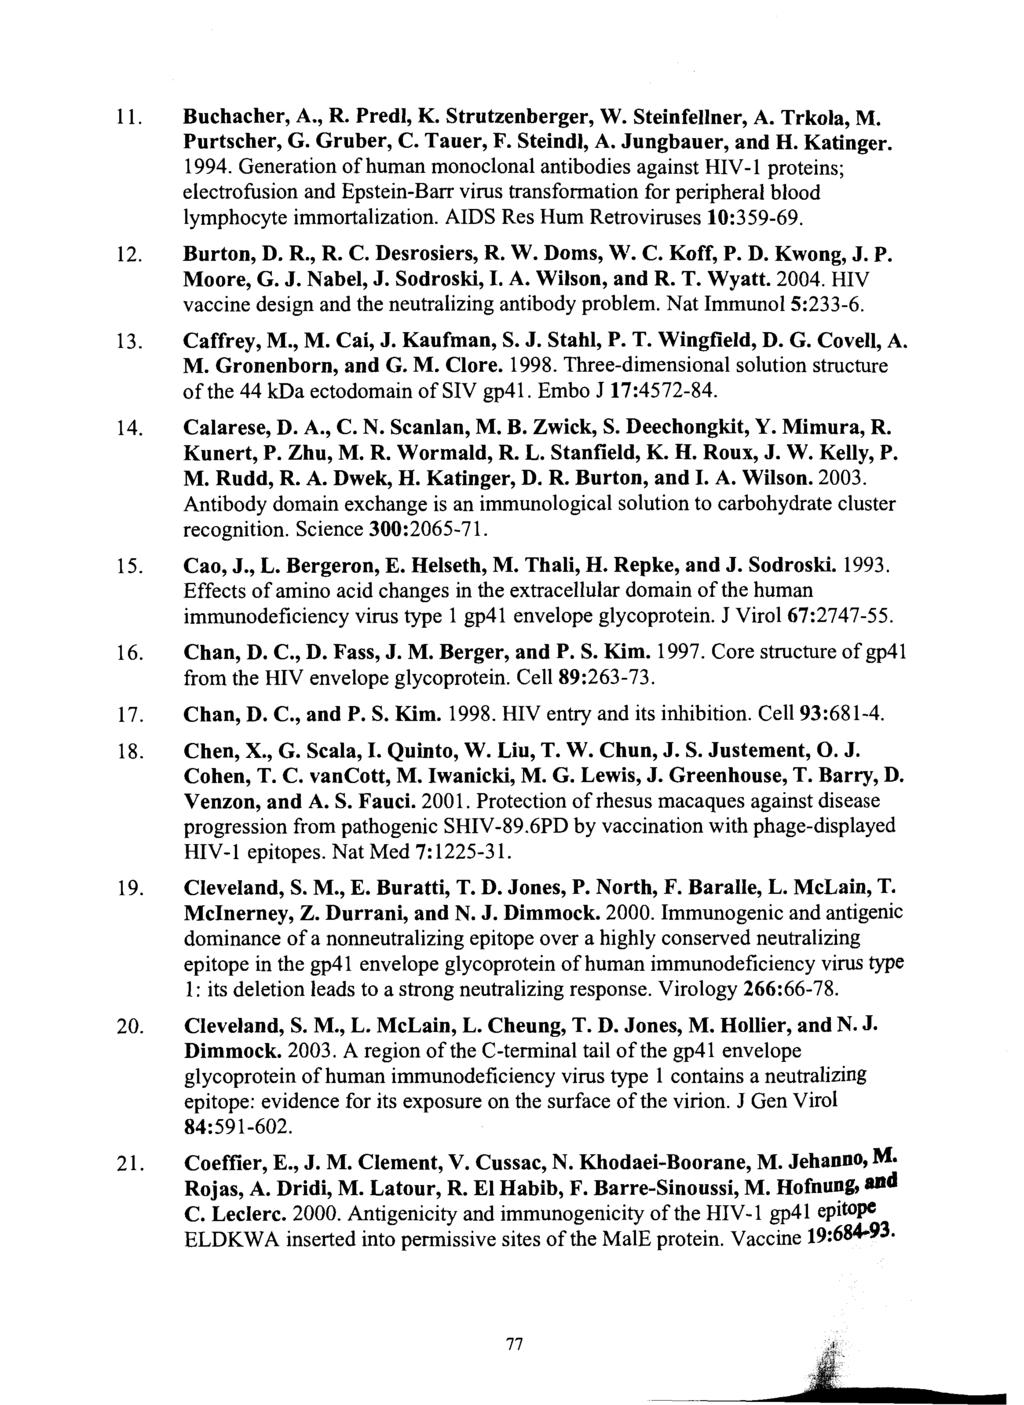 Buchacher, A., R. Predl, K. Strutzenberger, W. Steinfellner, A. Trkola, M. Purtscher, G. Gruber, C. Tauer, F. Steindl, A. Jungbauer, and H. Katinger. 1994.